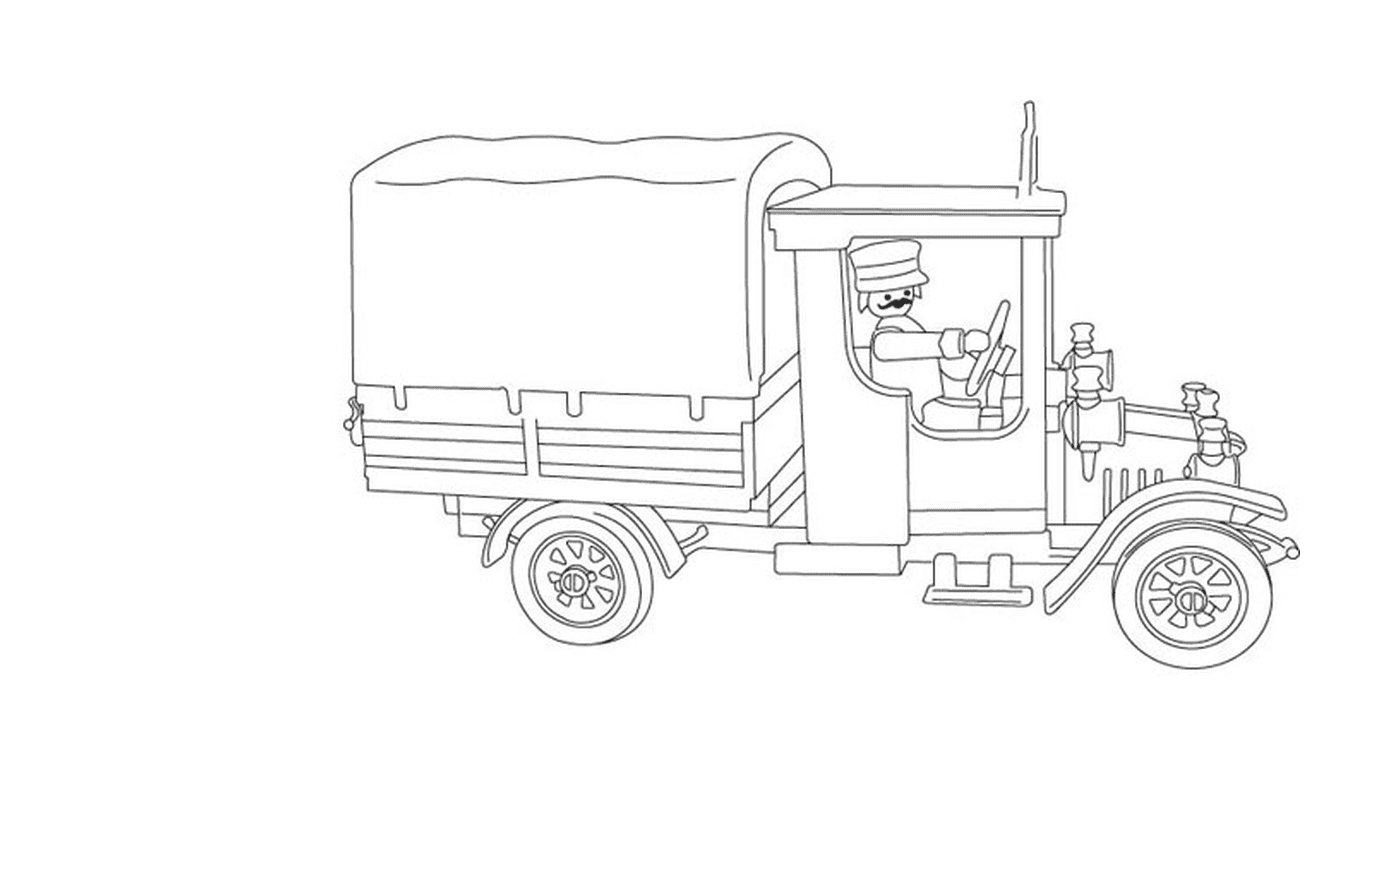 playmobil camion